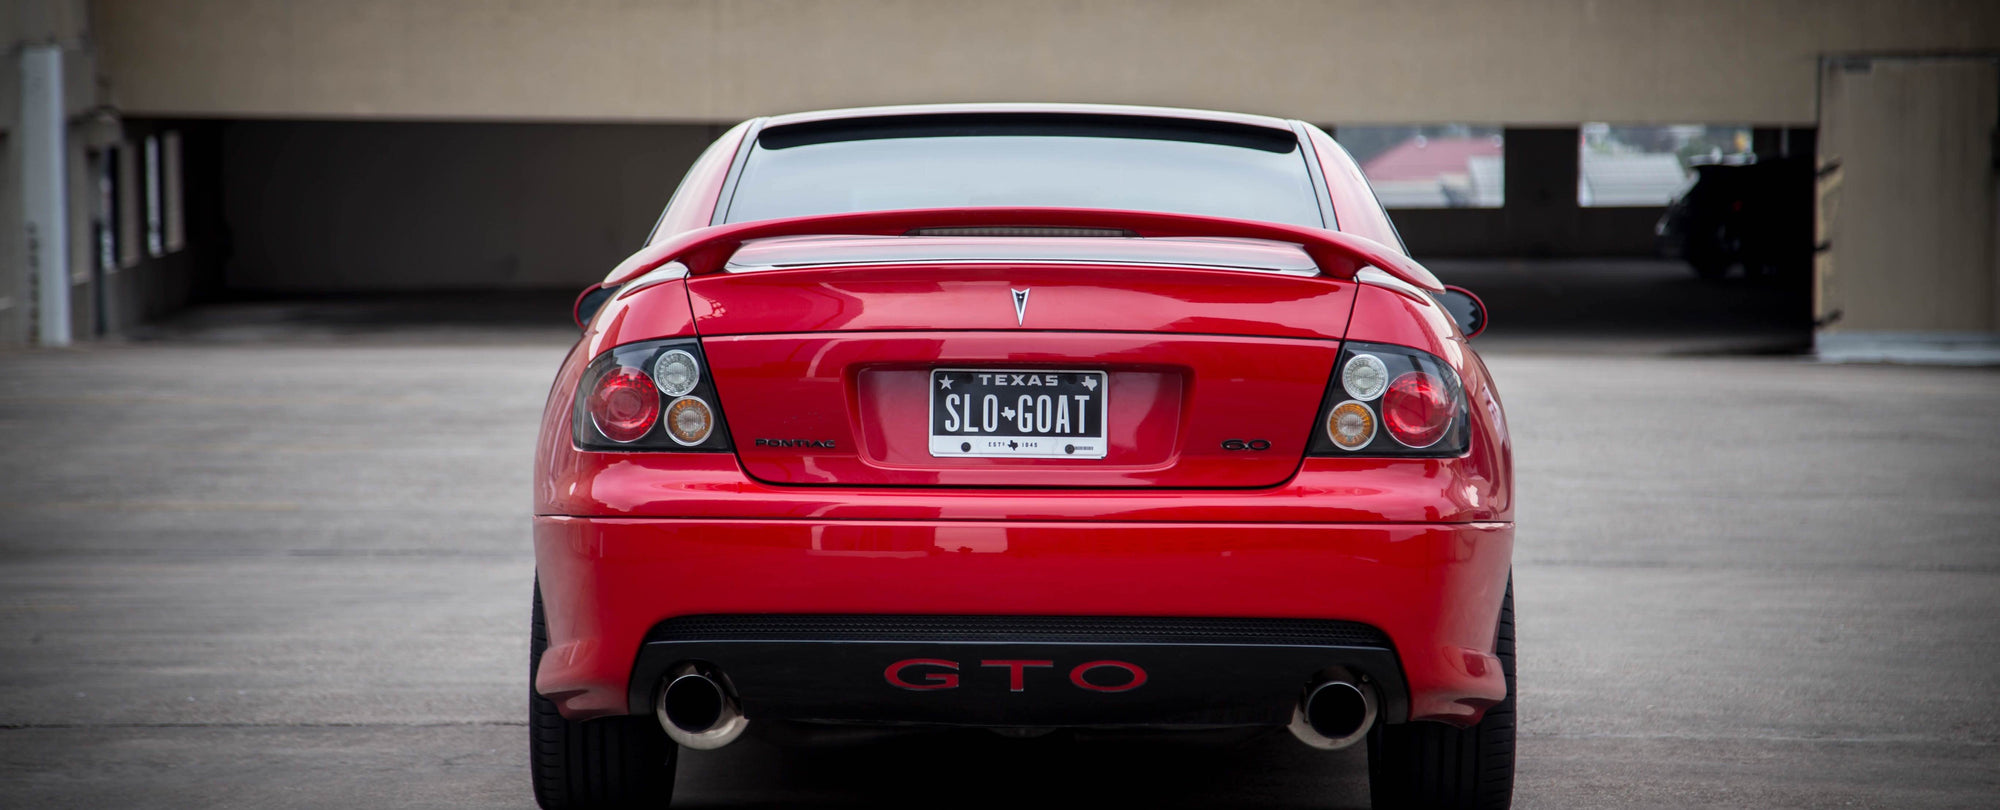 2007 Pontiac GTO 6.0L V8